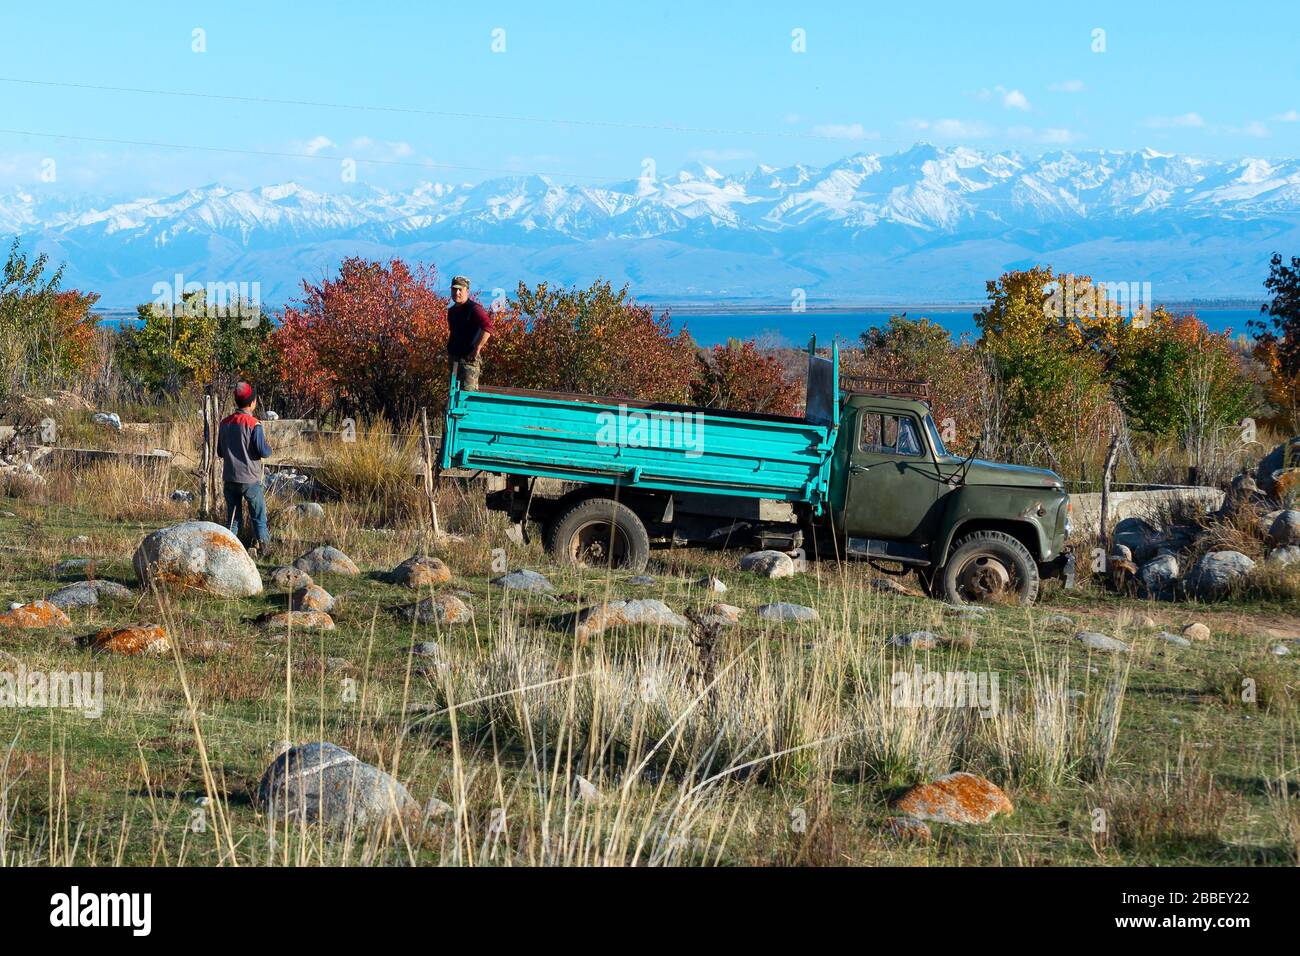 Vecchio camion con due contadini del Kirghizistan. Paesaggio naturale in Kirghizistan con rocce, alberi, Issyk-Kul Lago e montagna con neve. Foto Stock